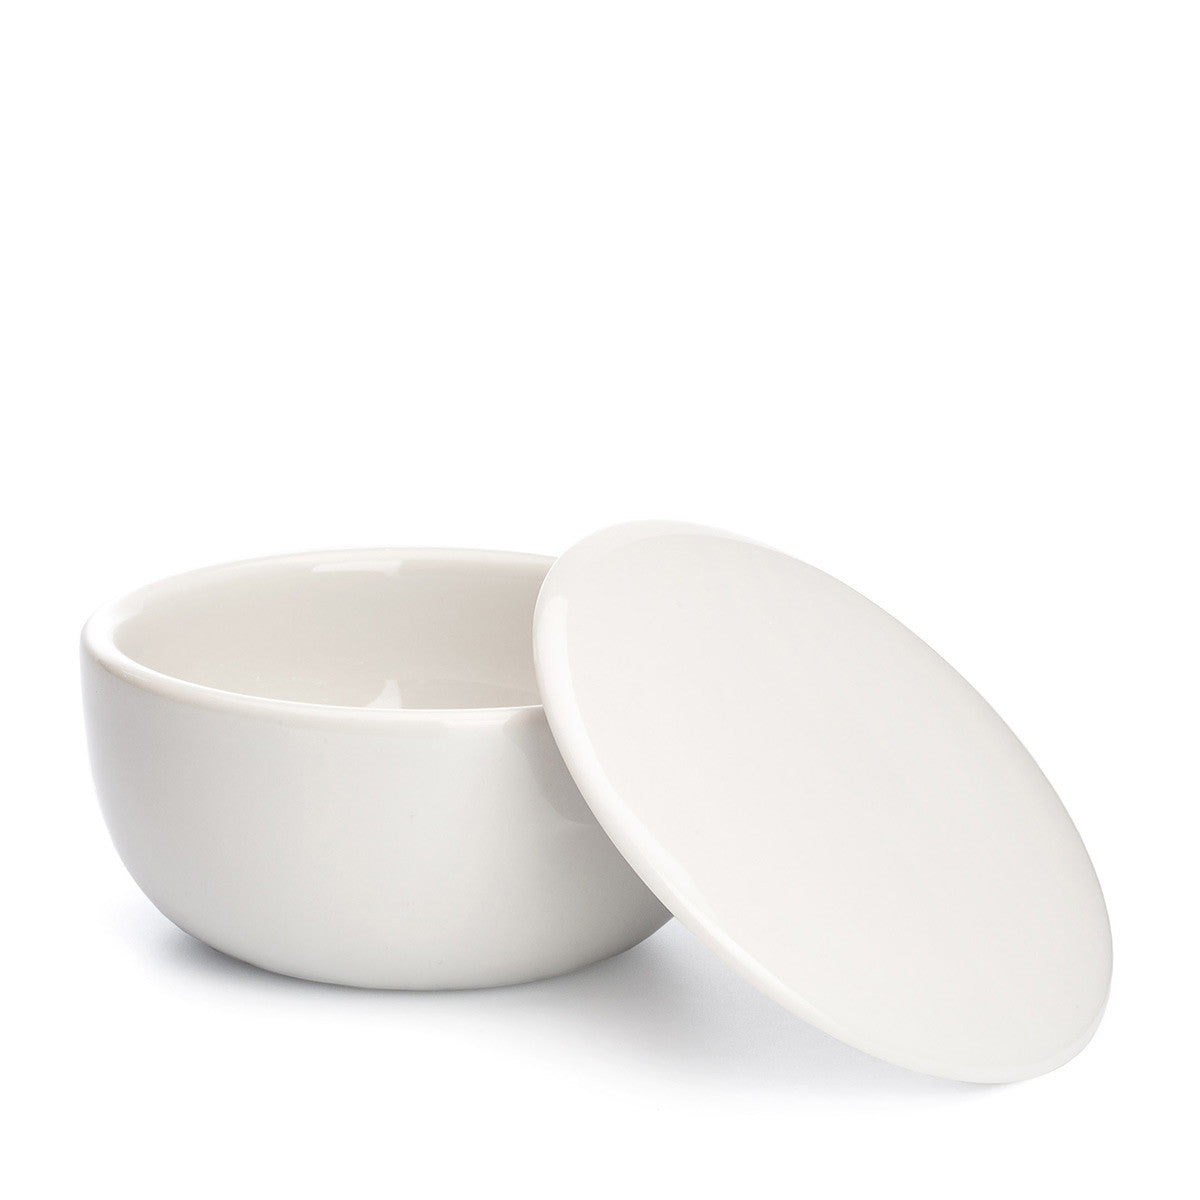 Plato de porcelana Mühle con jabón de afeitar pomelo y menta - cuenco de porcelana